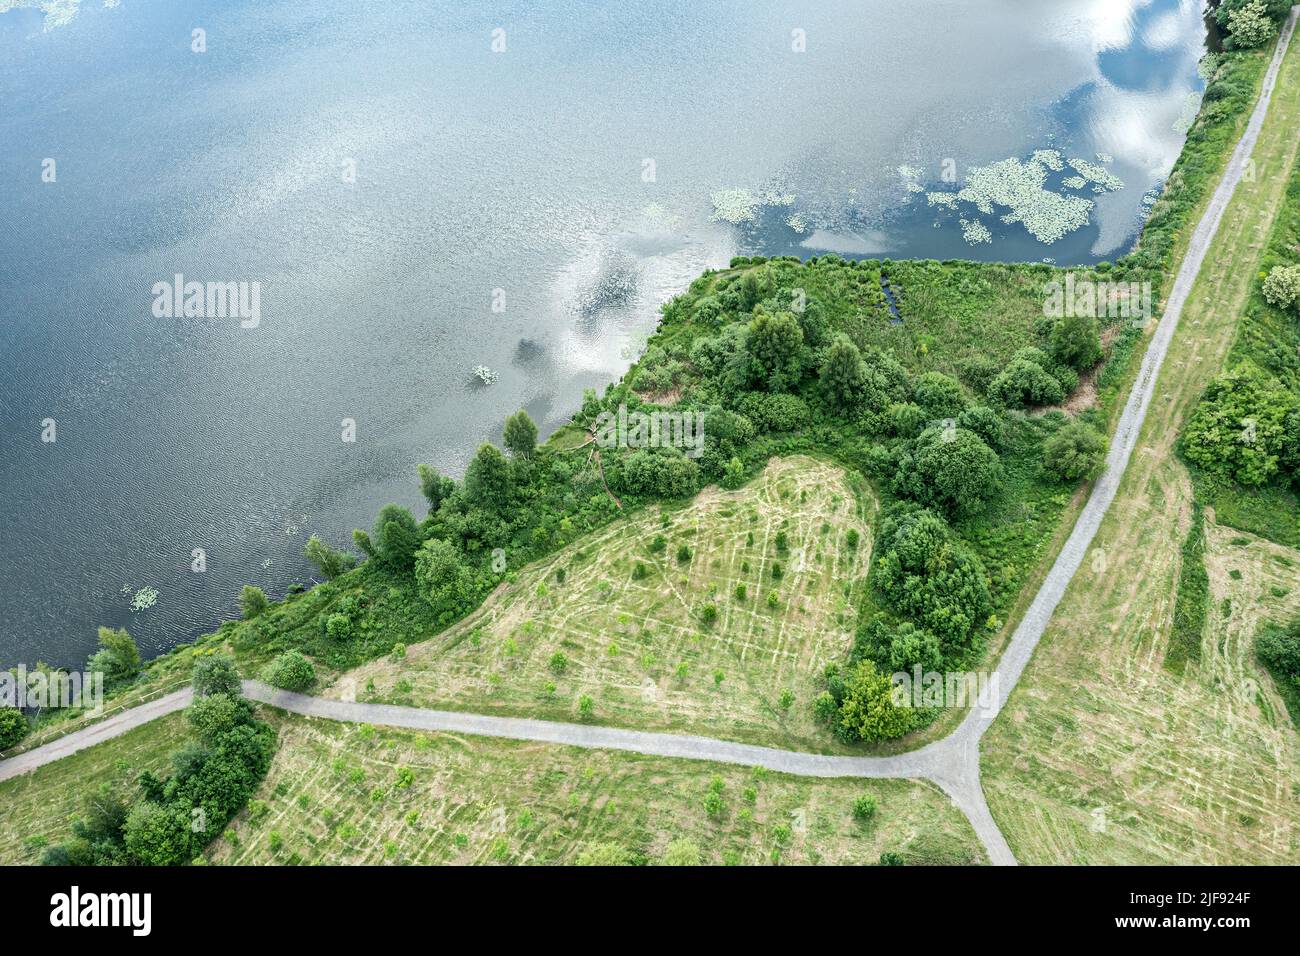 paisaje verde de verano. senderos peatonales o carriles para ciclistas a orillas del lago. vista aérea por encima de la cabeza. Foto de stock